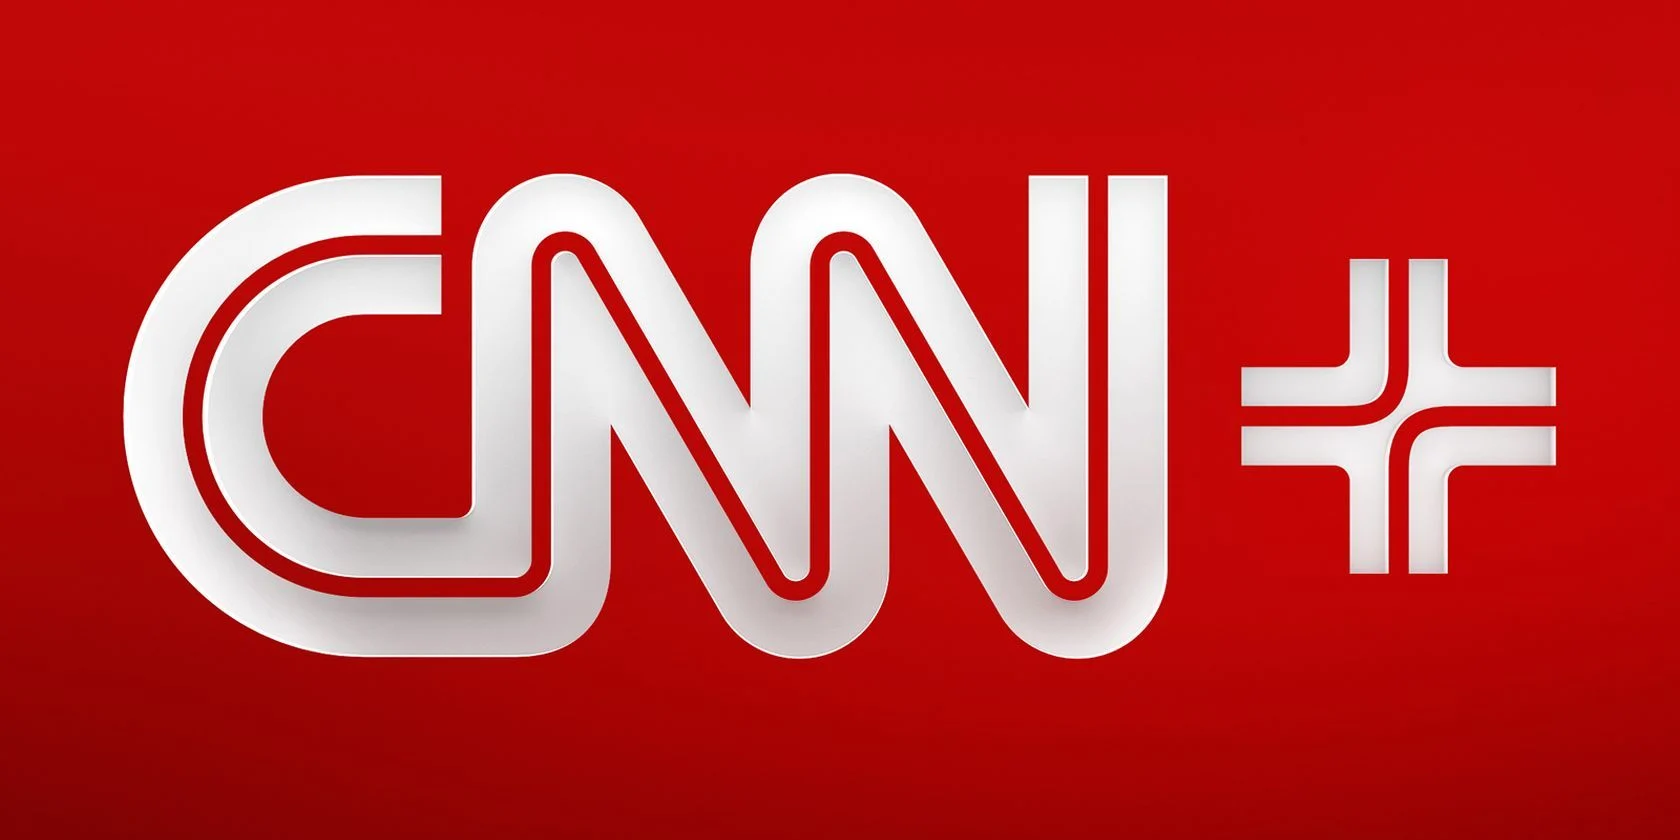 CNN Plus official logo